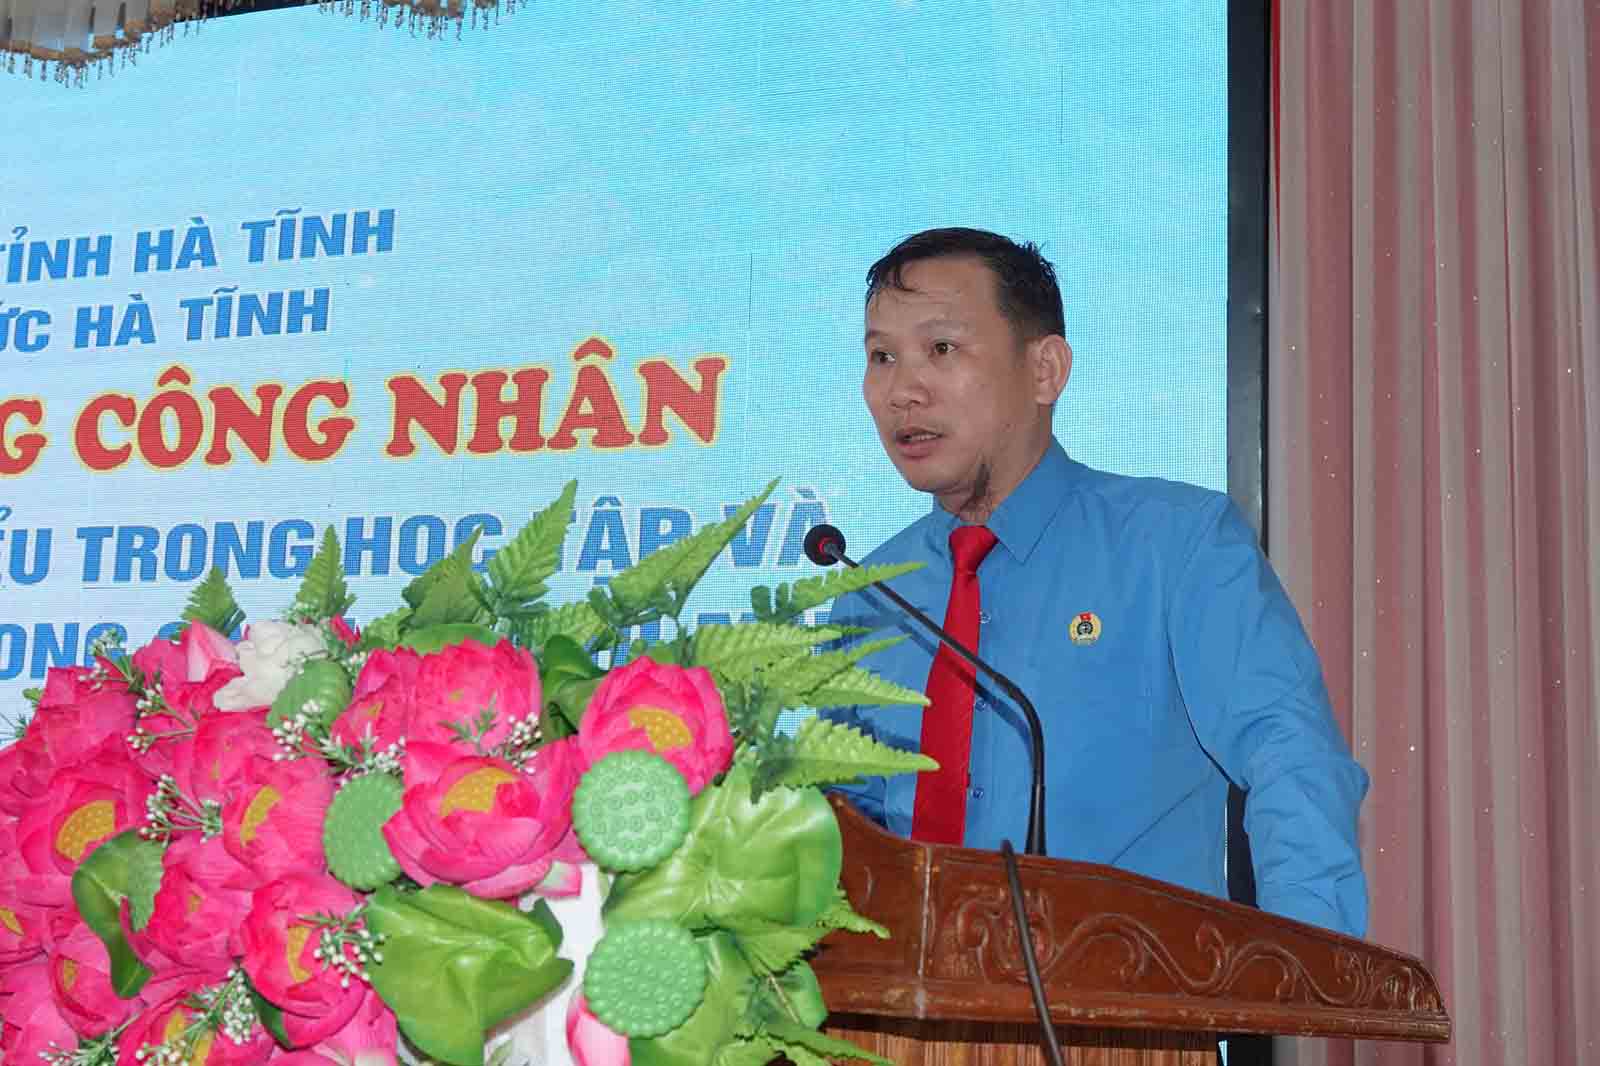 Ông Hà Văn Oanh - Chủ tịch Công đoàn Viên chức Hà Tĩnh phát động tại buổi lễ. Ảnh: Trần Tuấn.